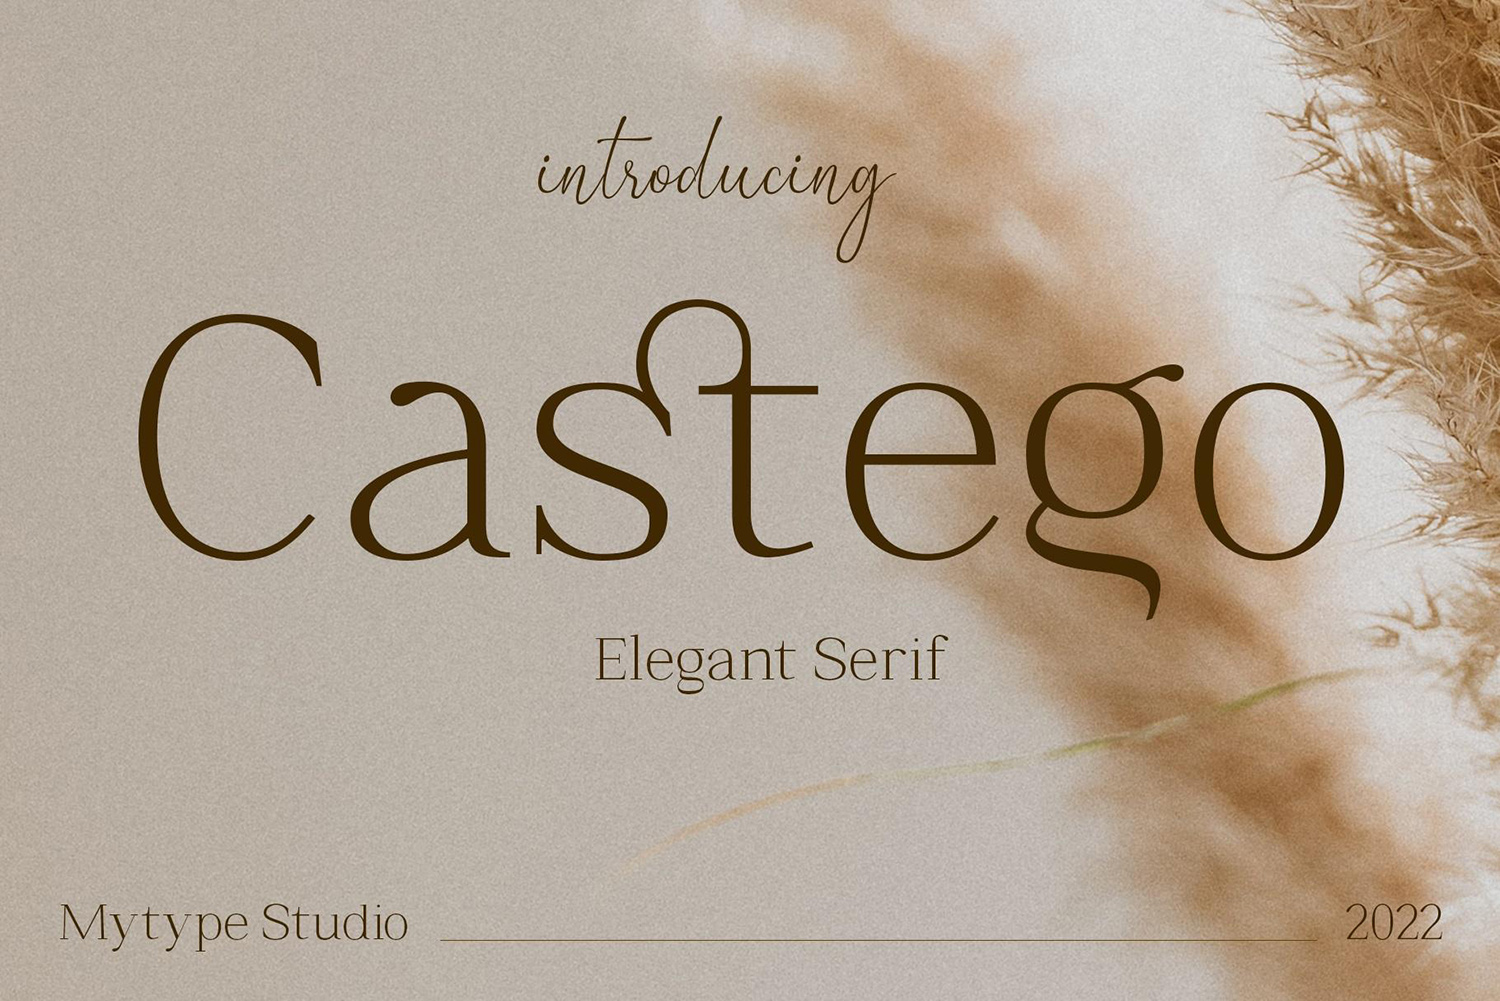 Castego Free Font